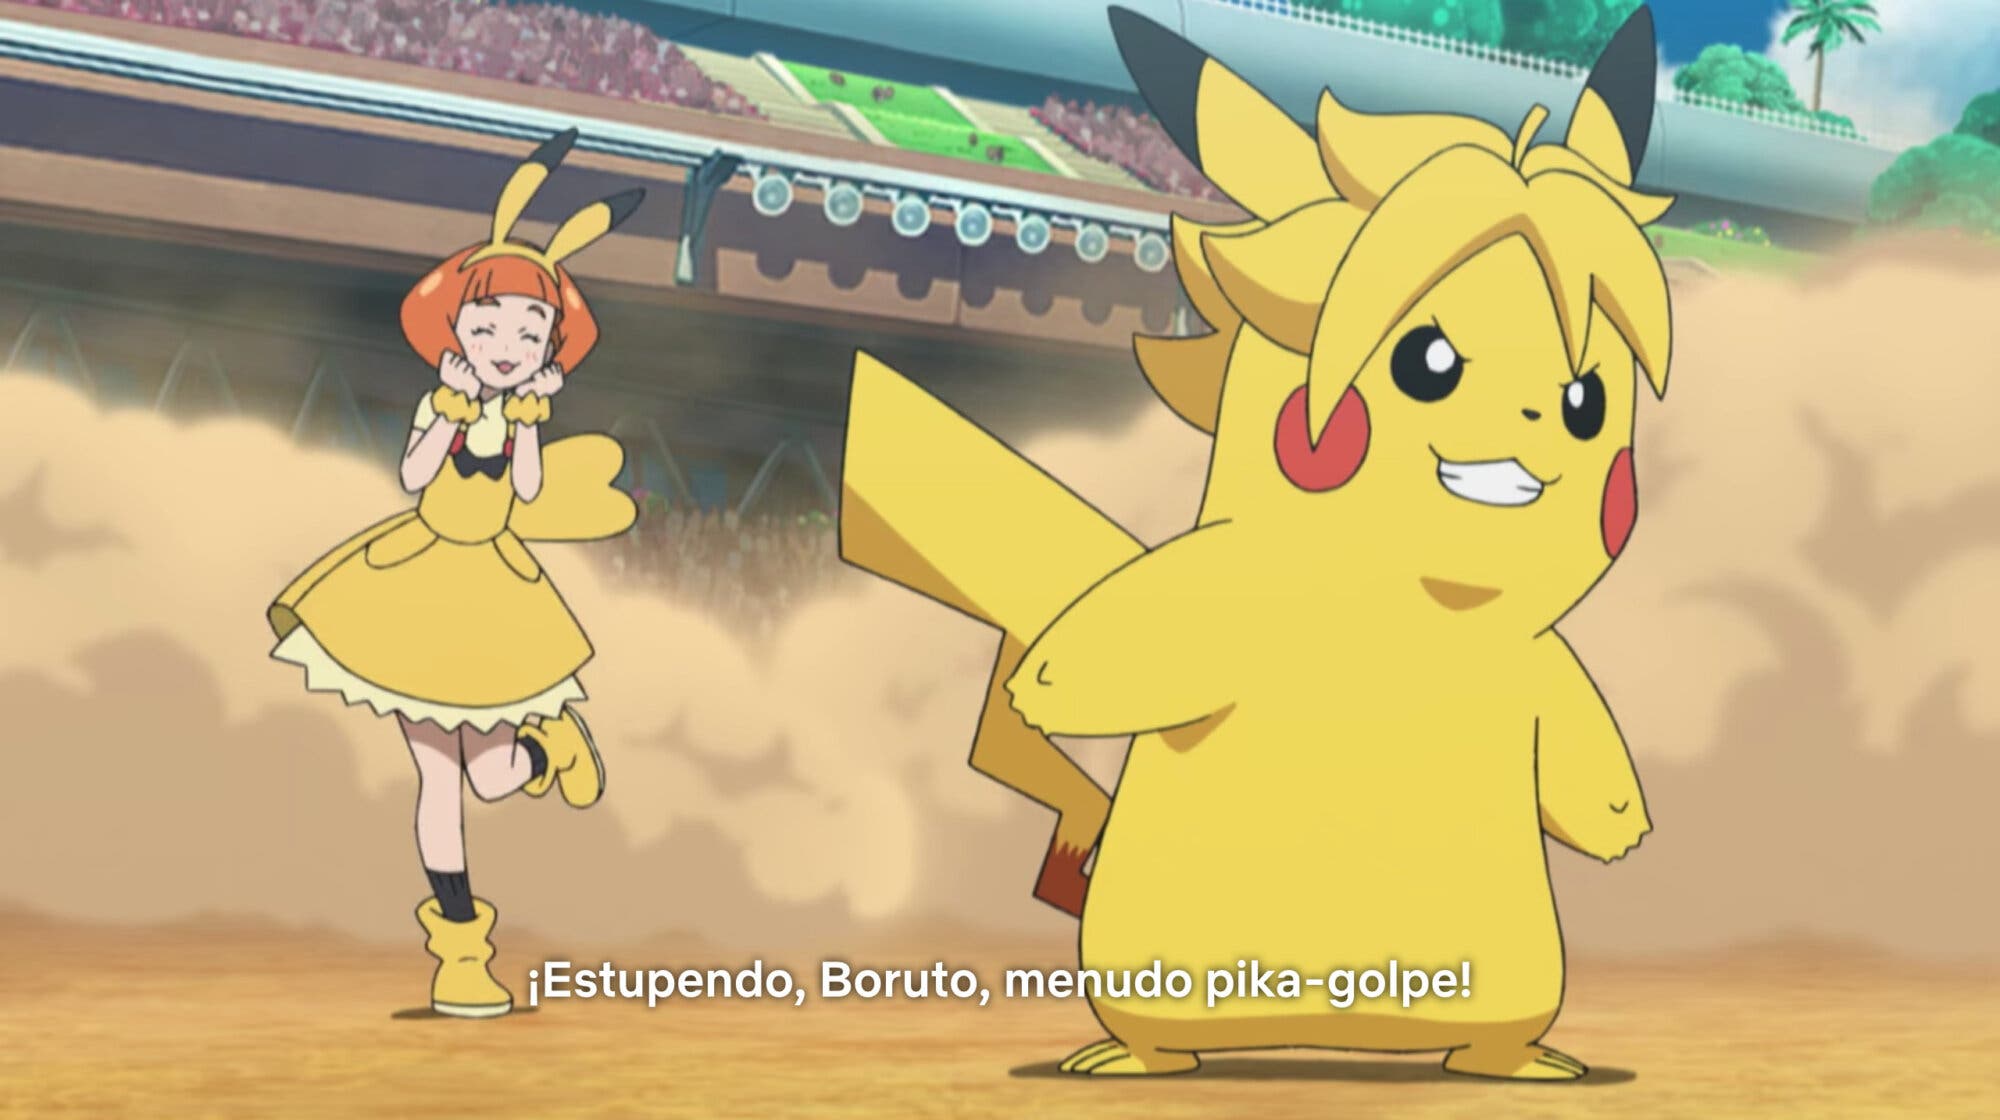 Boruto sale en el anime de Pokémon, aunque no como esperas